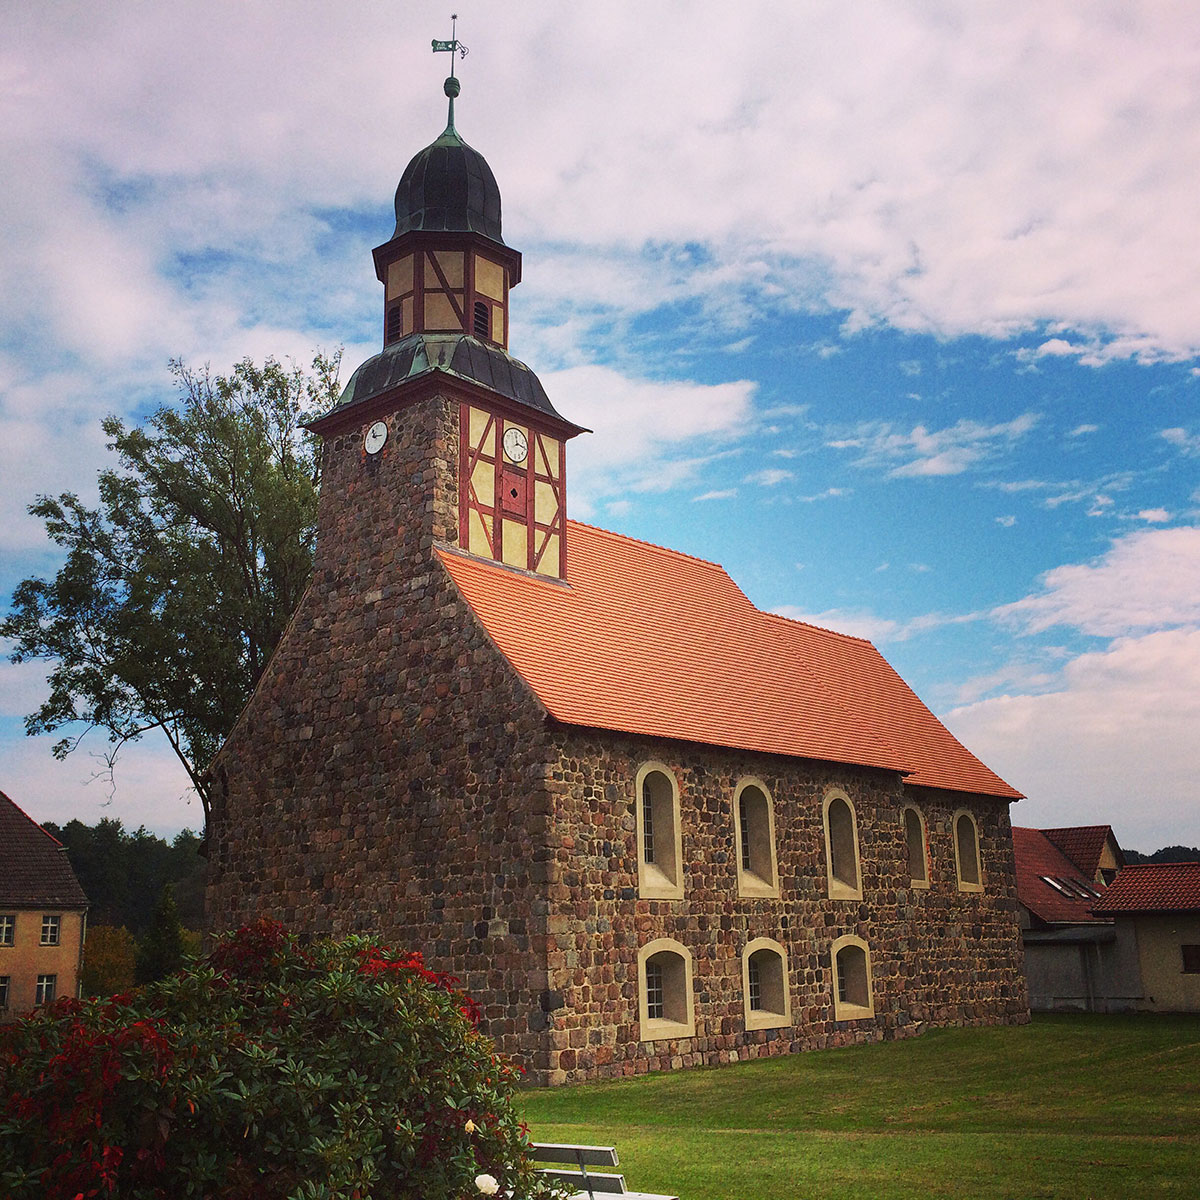 Die Kirche in Raben, ein alter Feldsteinbau wie fast alle Kirchen der Umgebung